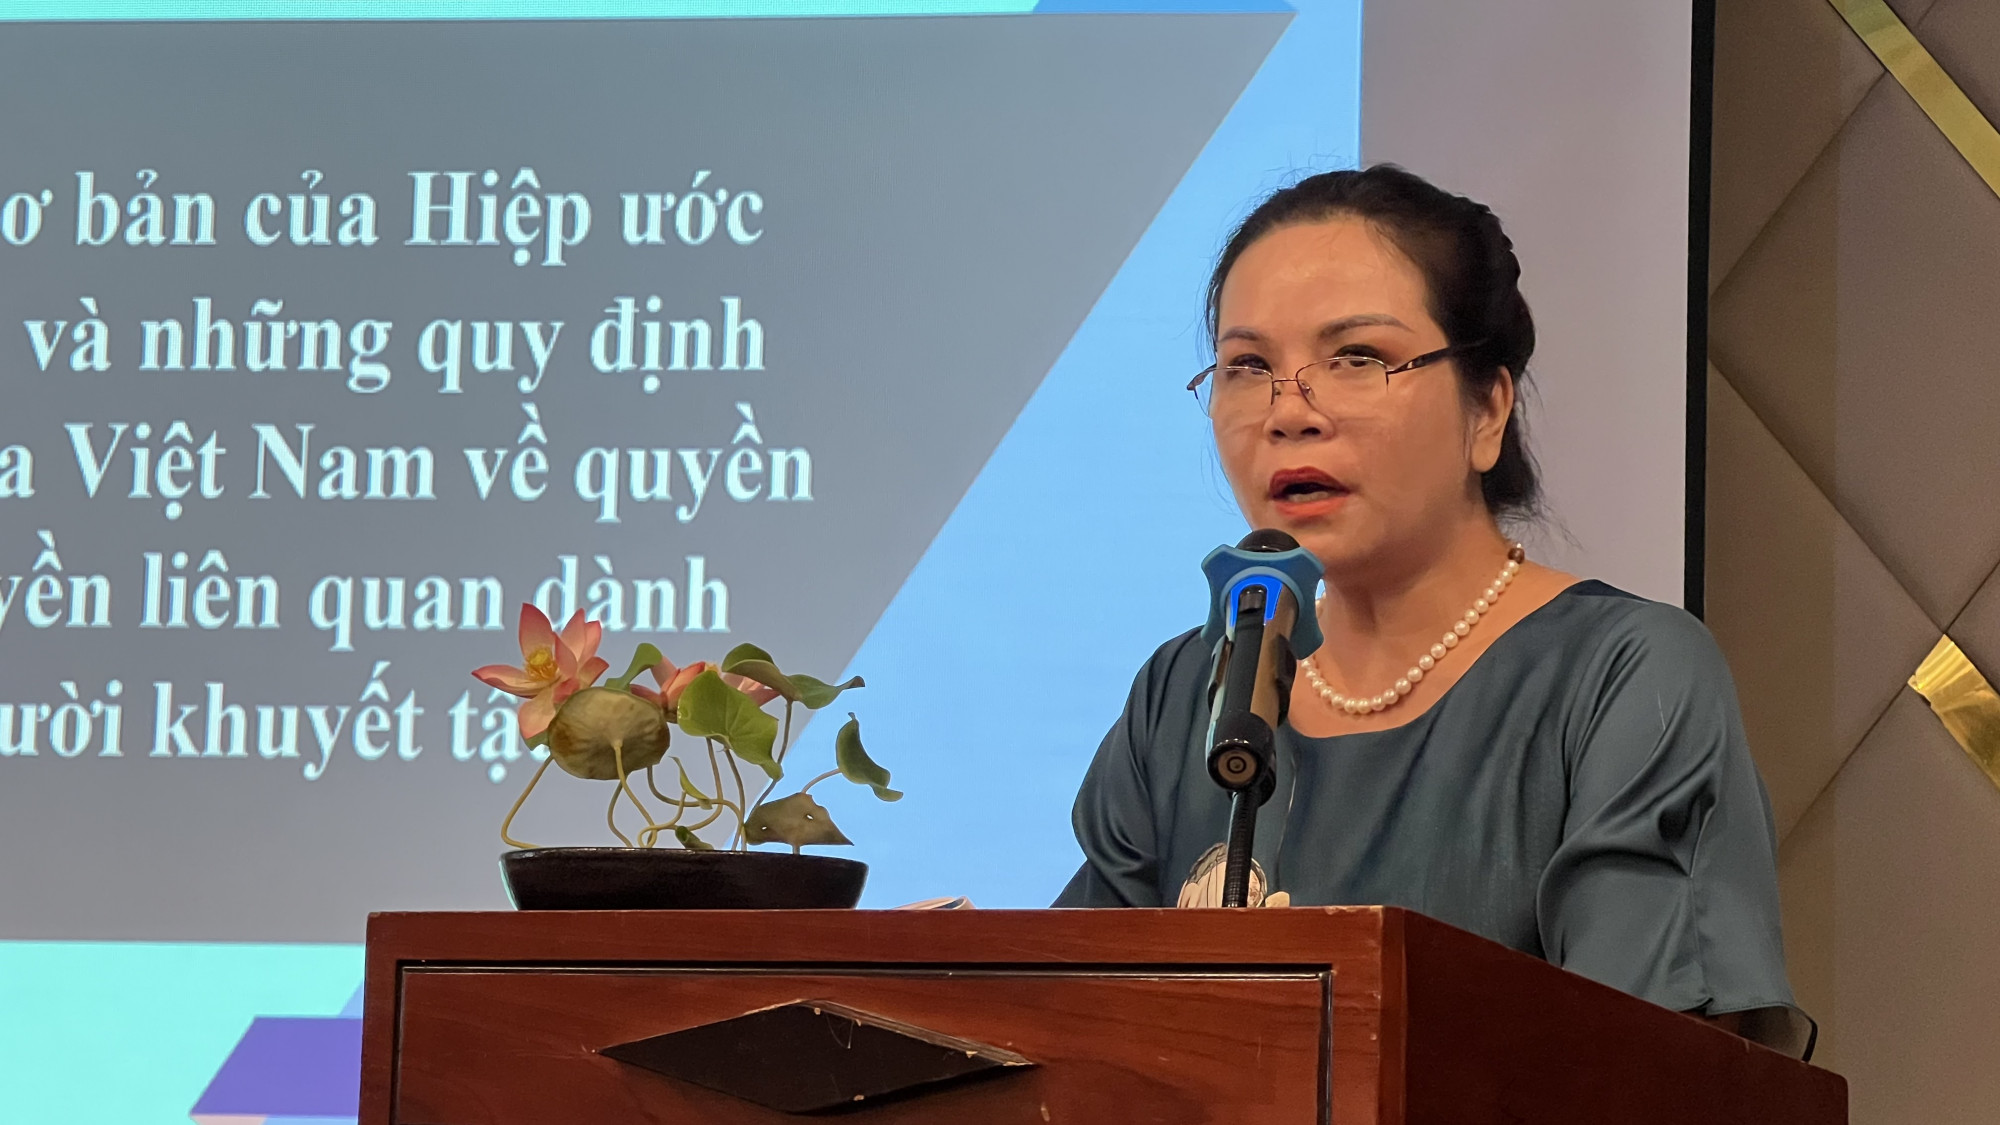 Bà Phạm Thị Kim Oanh, Phó Cục trưởng Cục Bản quyền: “Hiệp ước Marrakesh quy định các quốc gia thành viên khi quy định về việc áp dụng các biện pháp công nghệ không được gây cản trở những người thụ hưởng được hưởng lợi từ những giới hạn và ngoại lệ quy định từ Hiệp ước này 